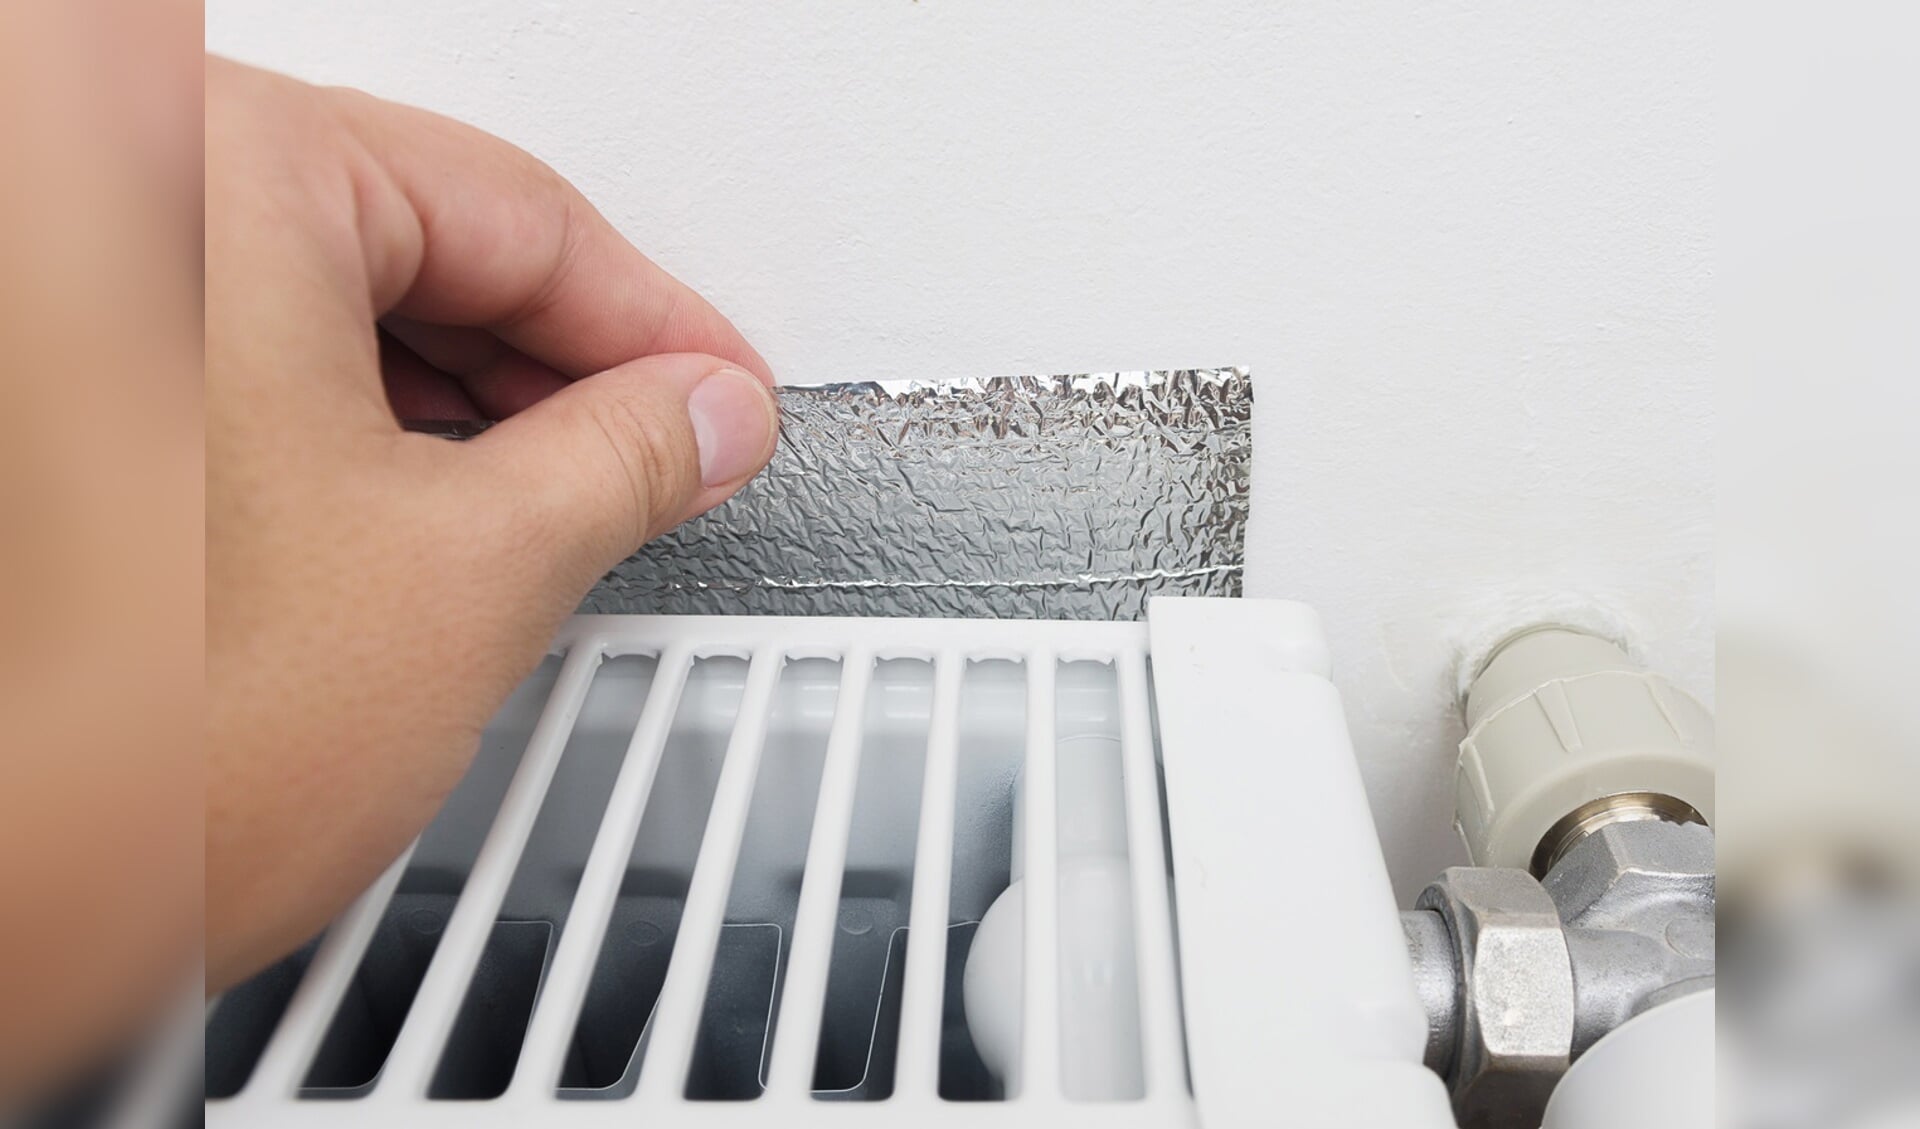 Radiatorfolie helpt op een simpele manier de warmte in het huis te houden. 